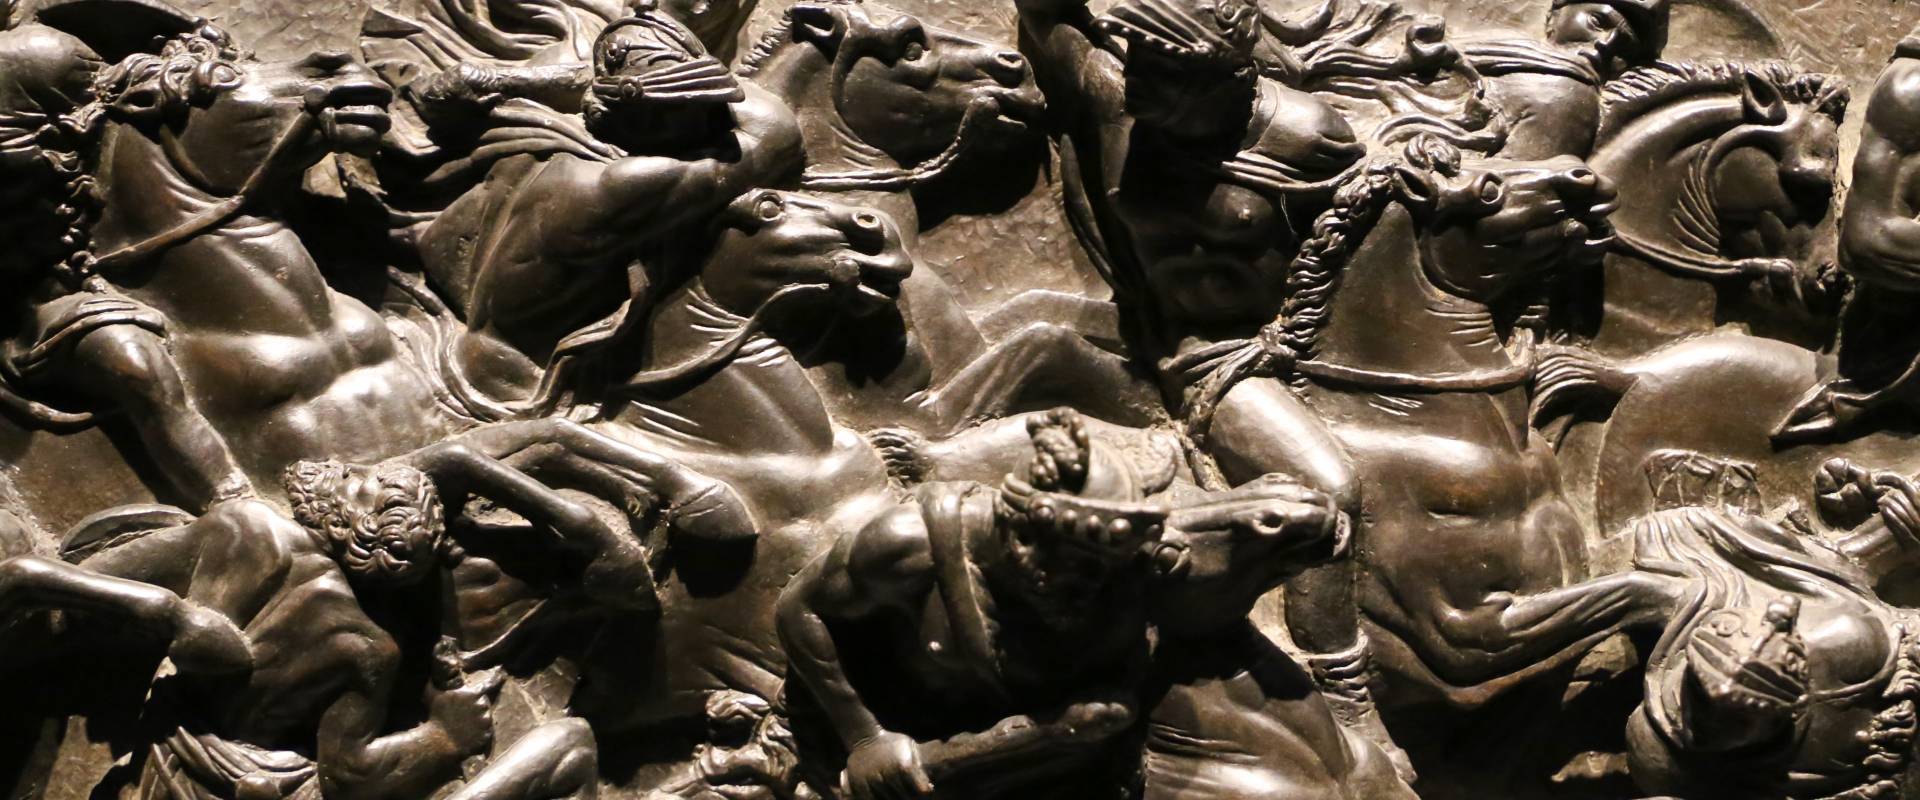 Bertoldo di giovanni, scena di battaglia, 1480 ca. (bargello) 04 foto di Sailko